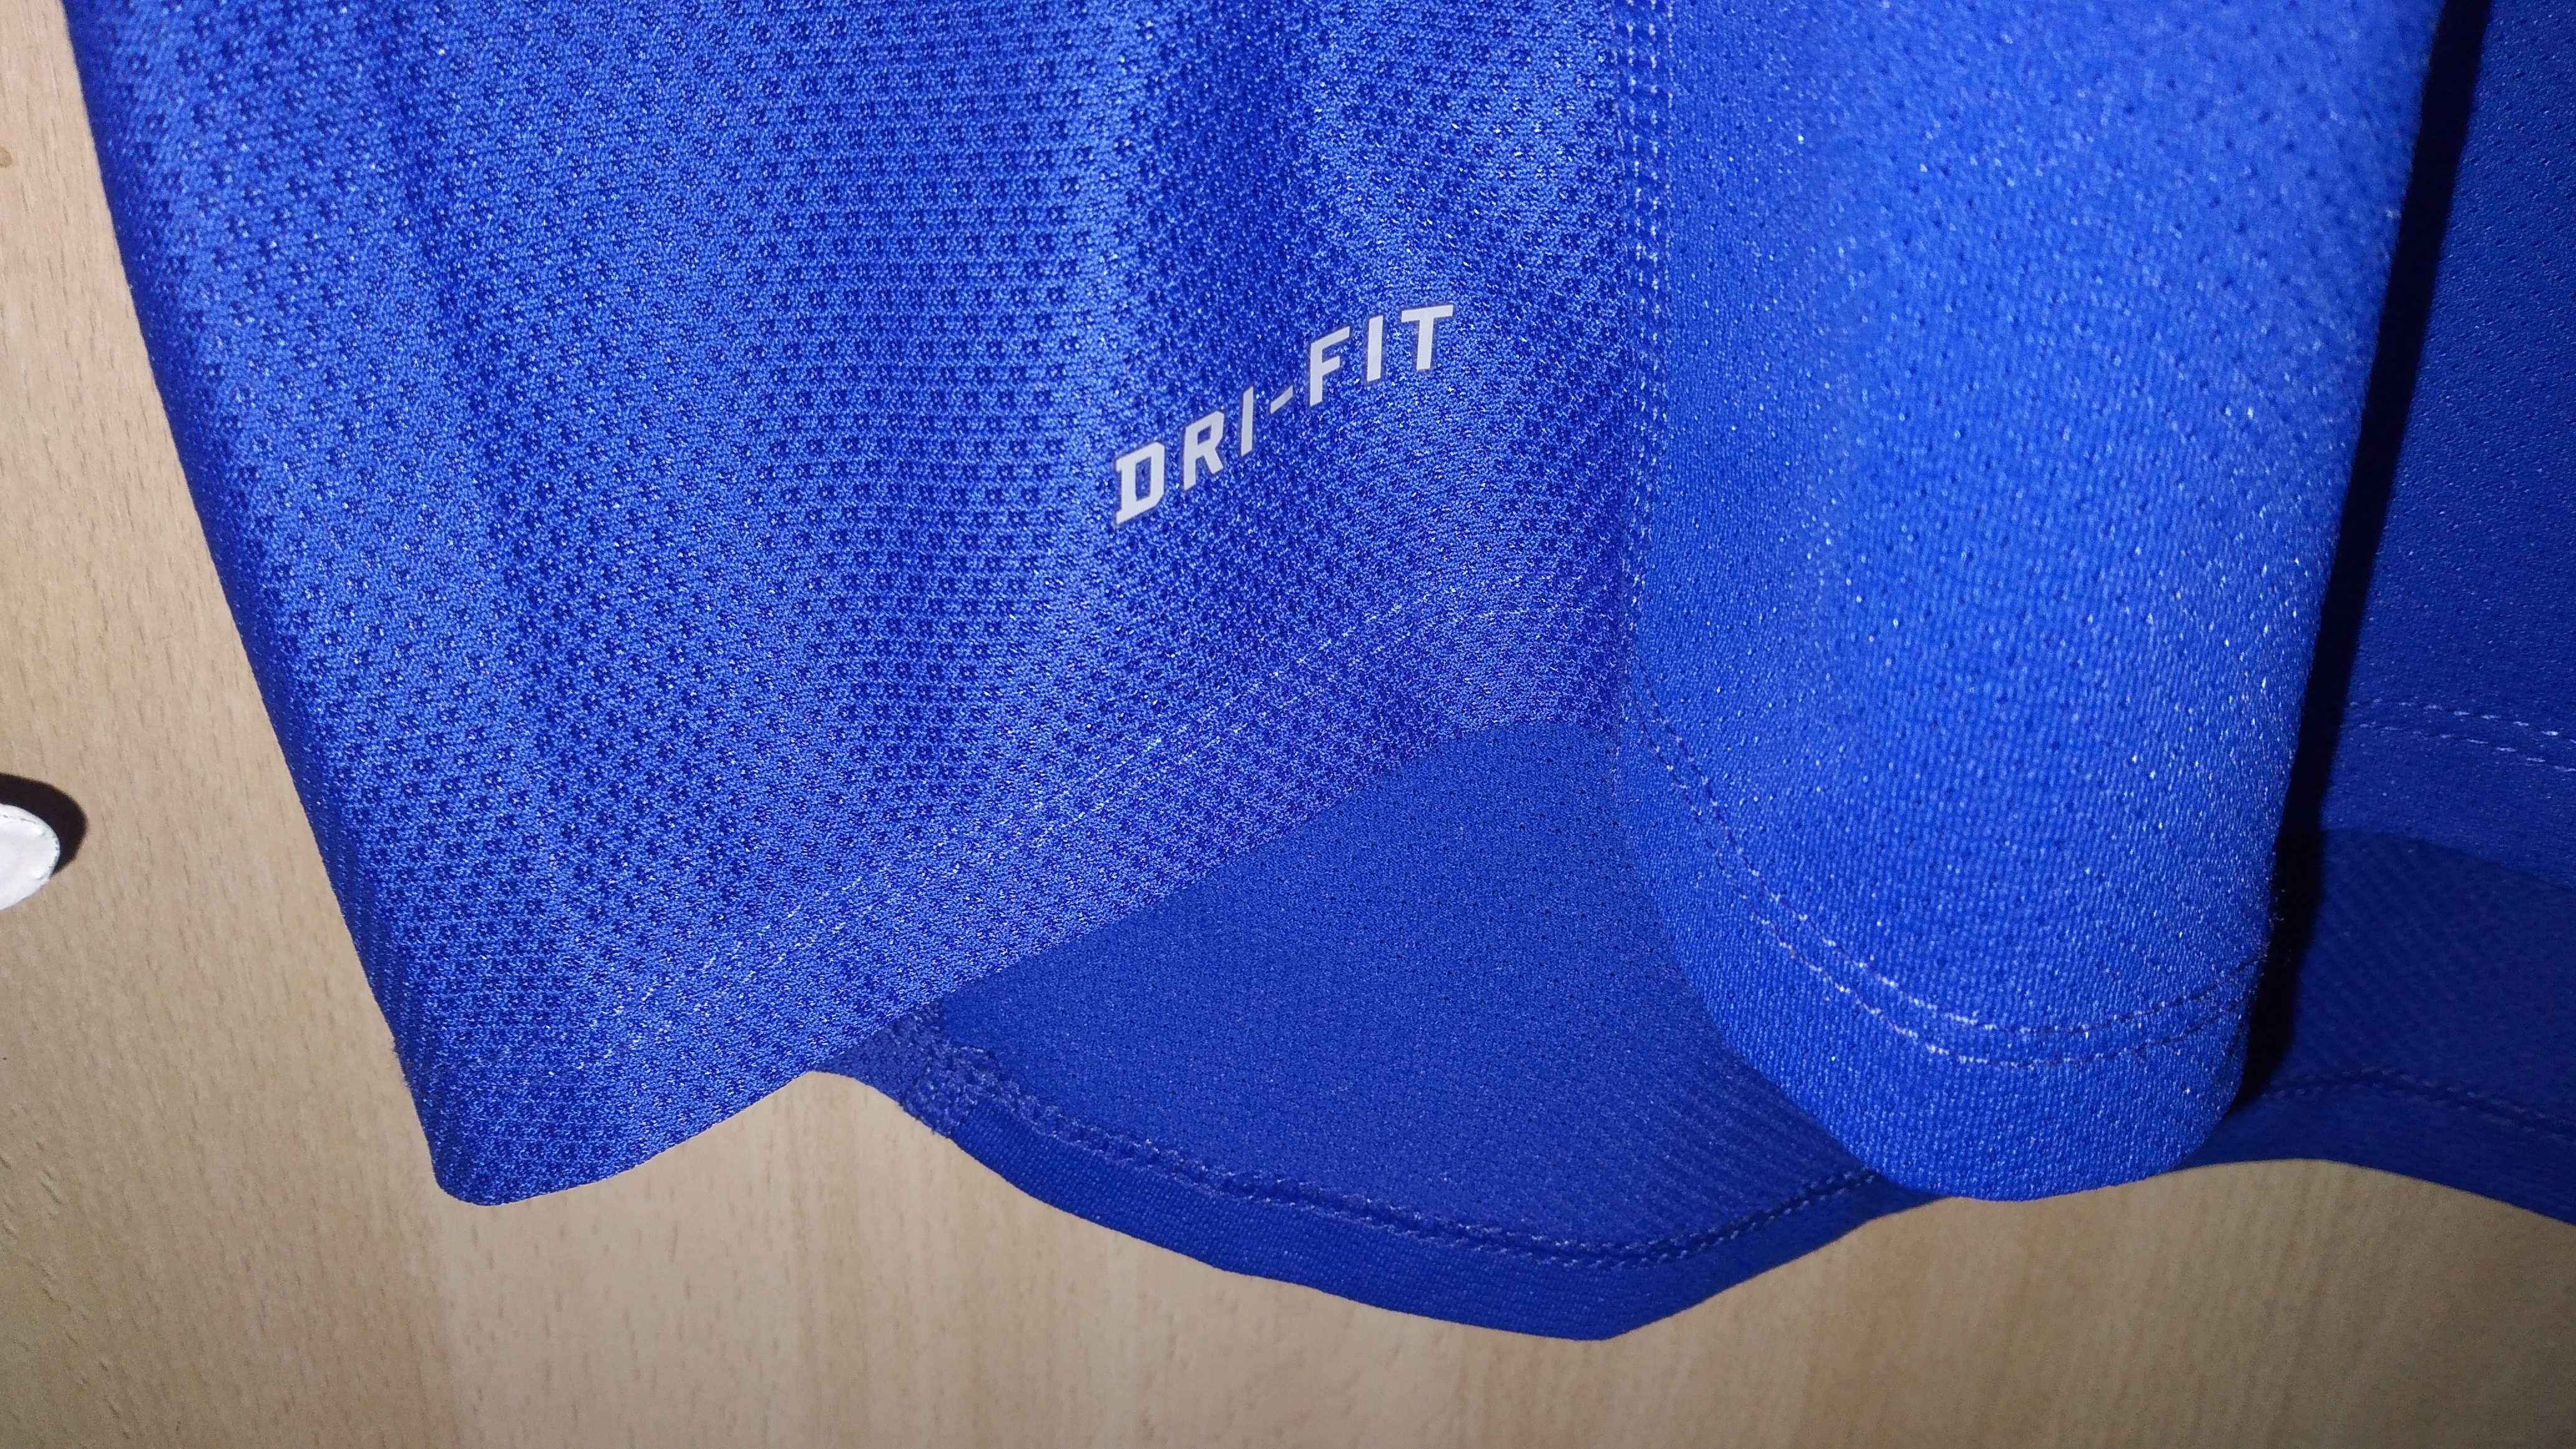 Nike Dri Fit Blue M